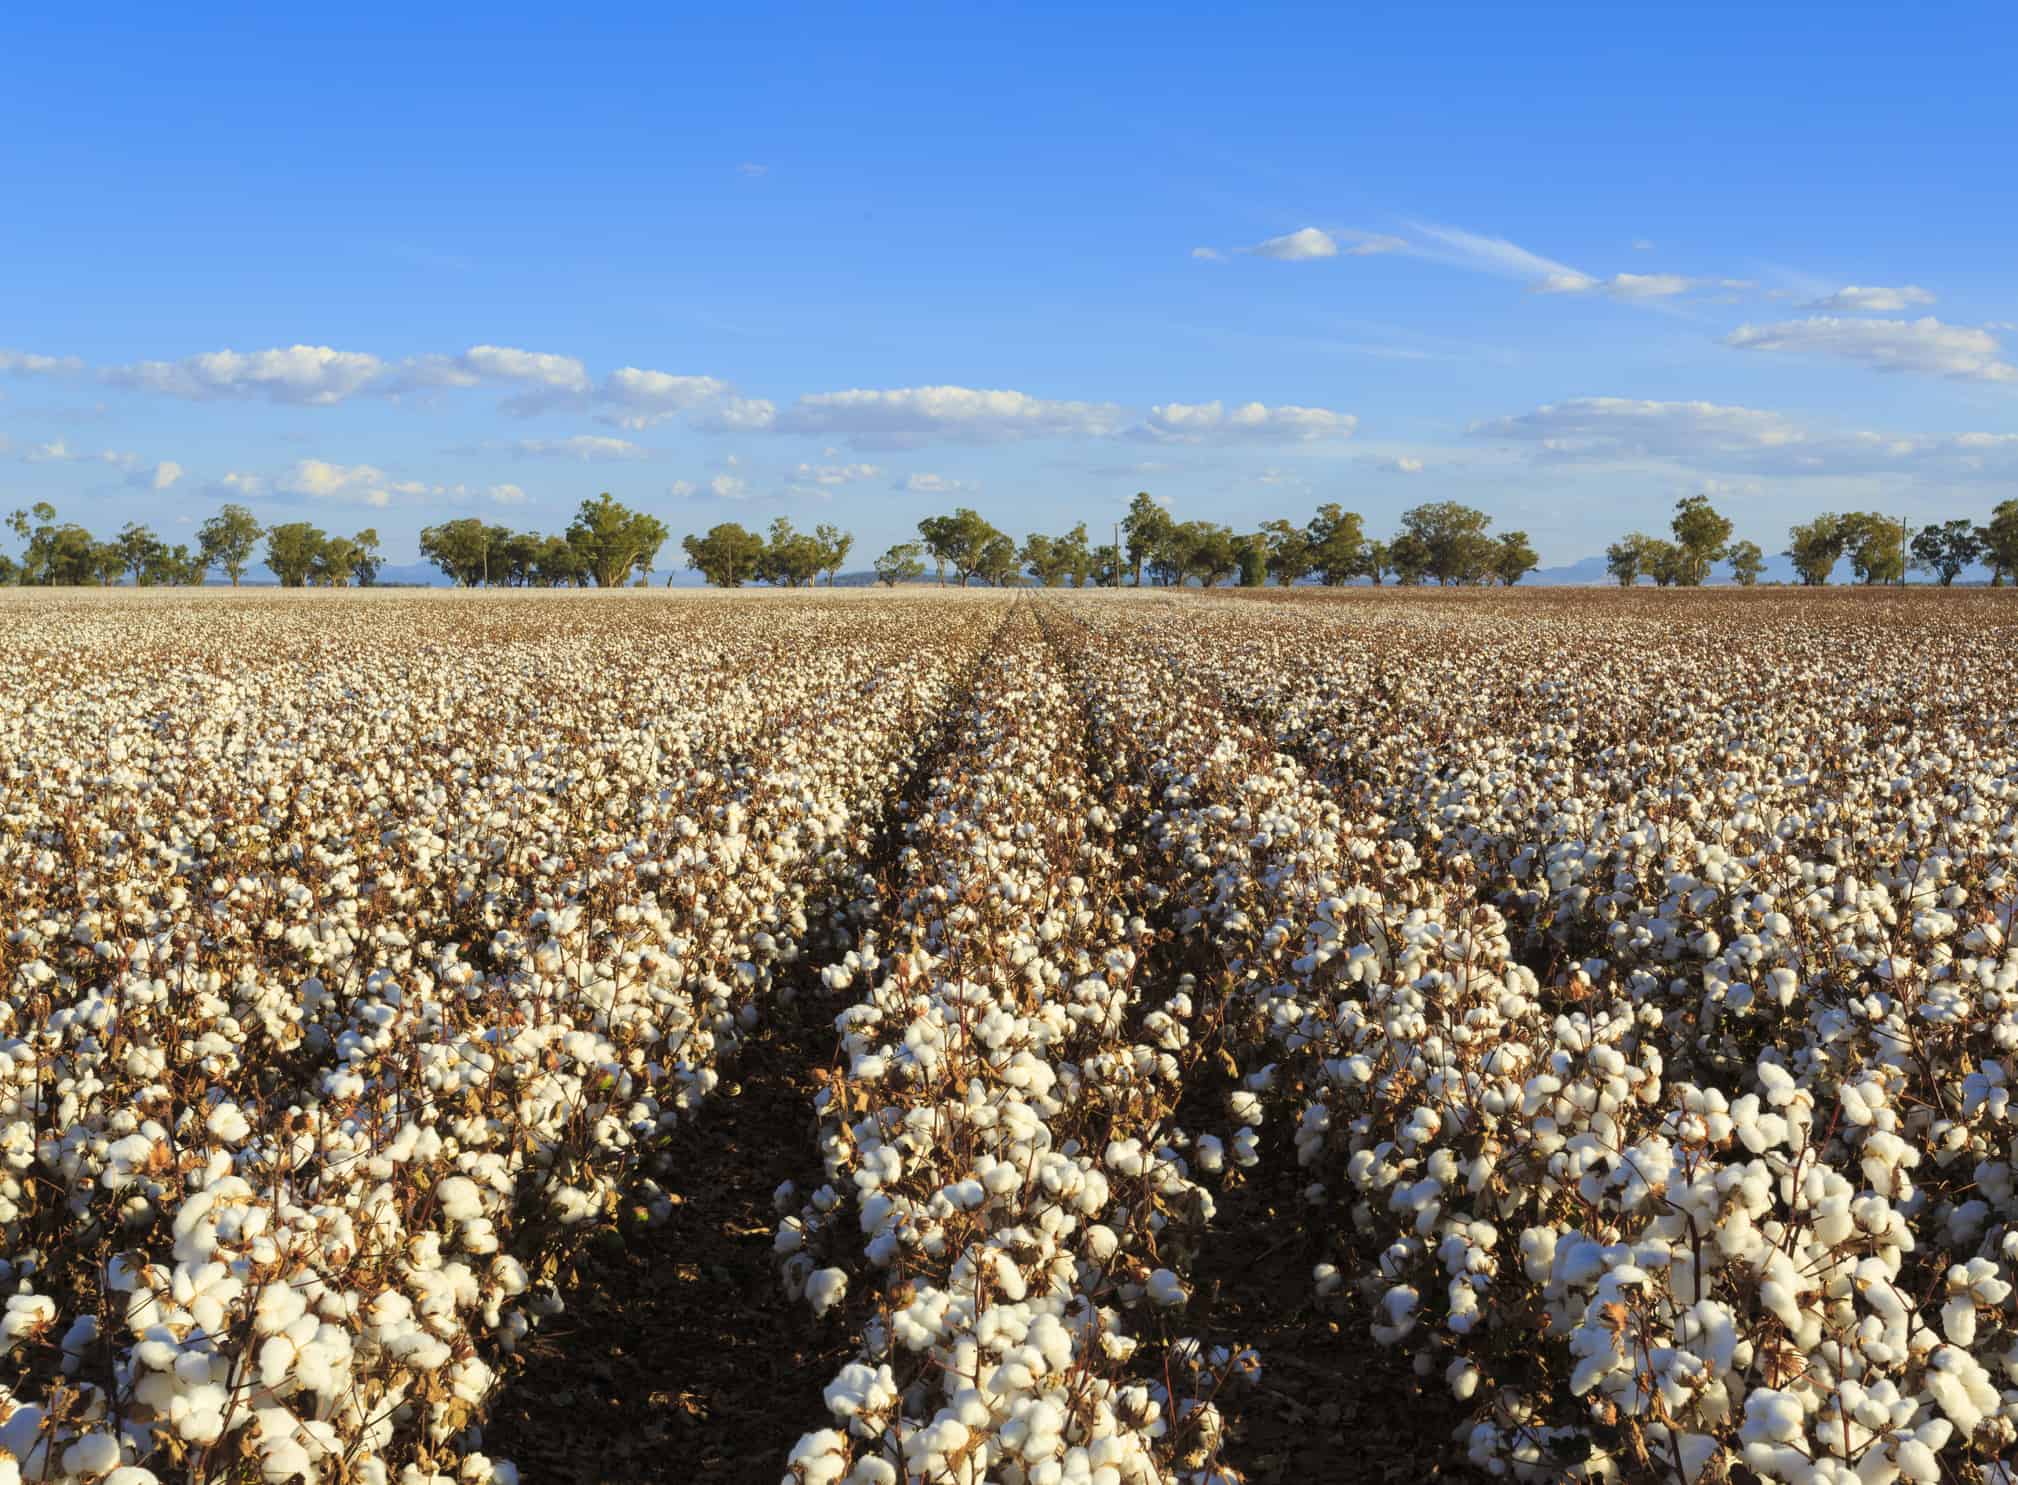 Cotton crops